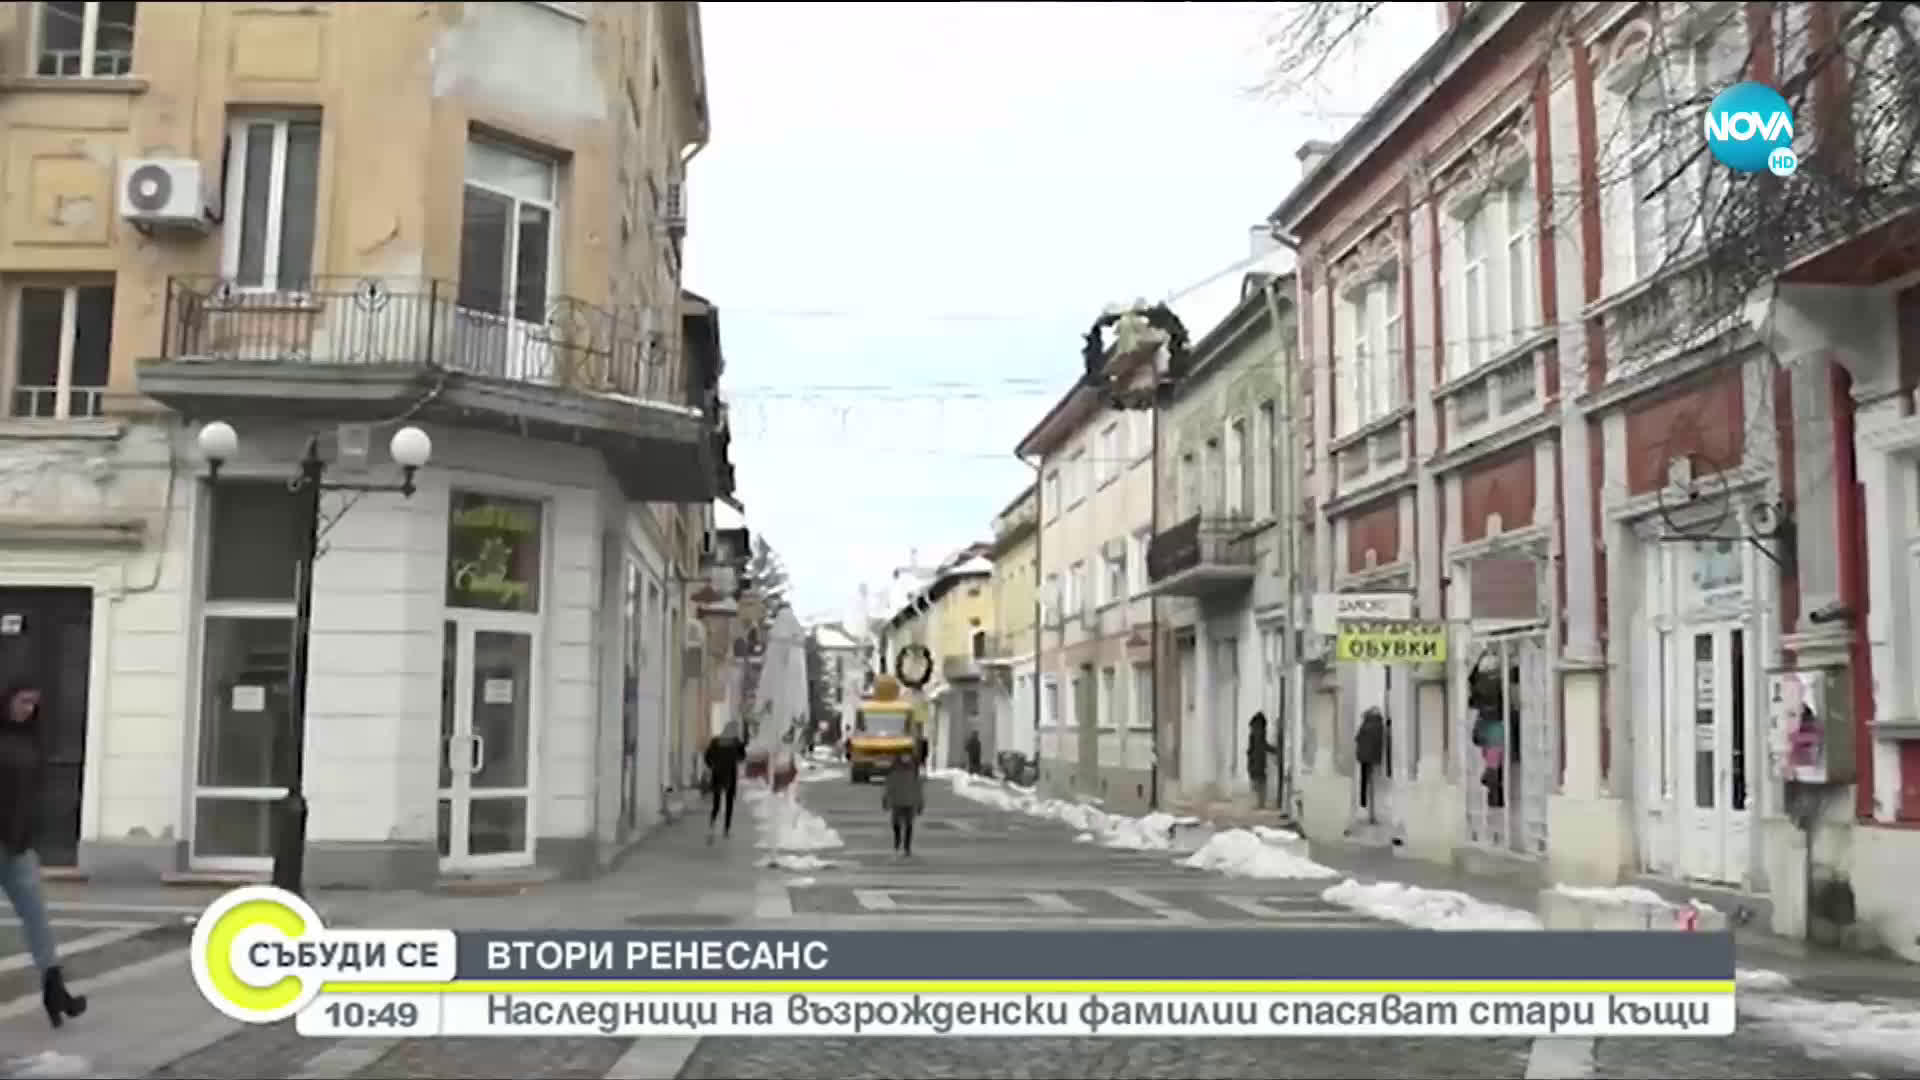 Наследници на възрожденски фамилии ще реставрират старите сгради във Враца